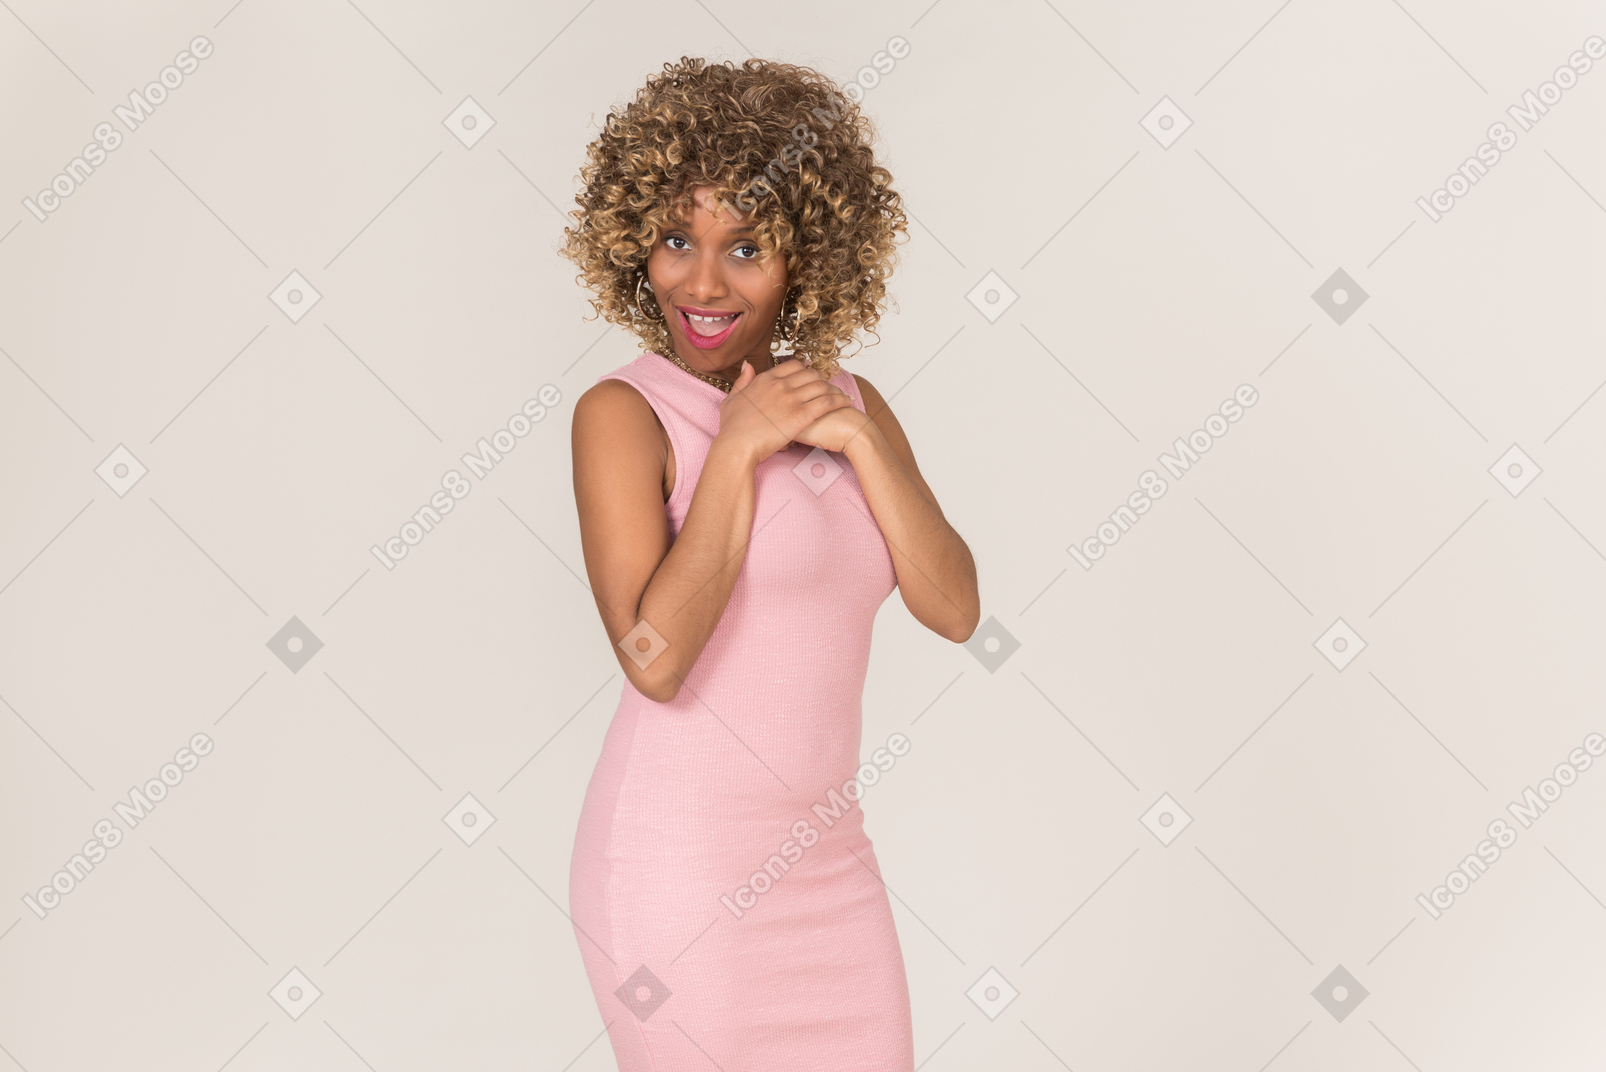 Uma jovem negra de cabelos fofos com um vestido rosa pastel, se divertindo sozinha contra um fundo cinza liso